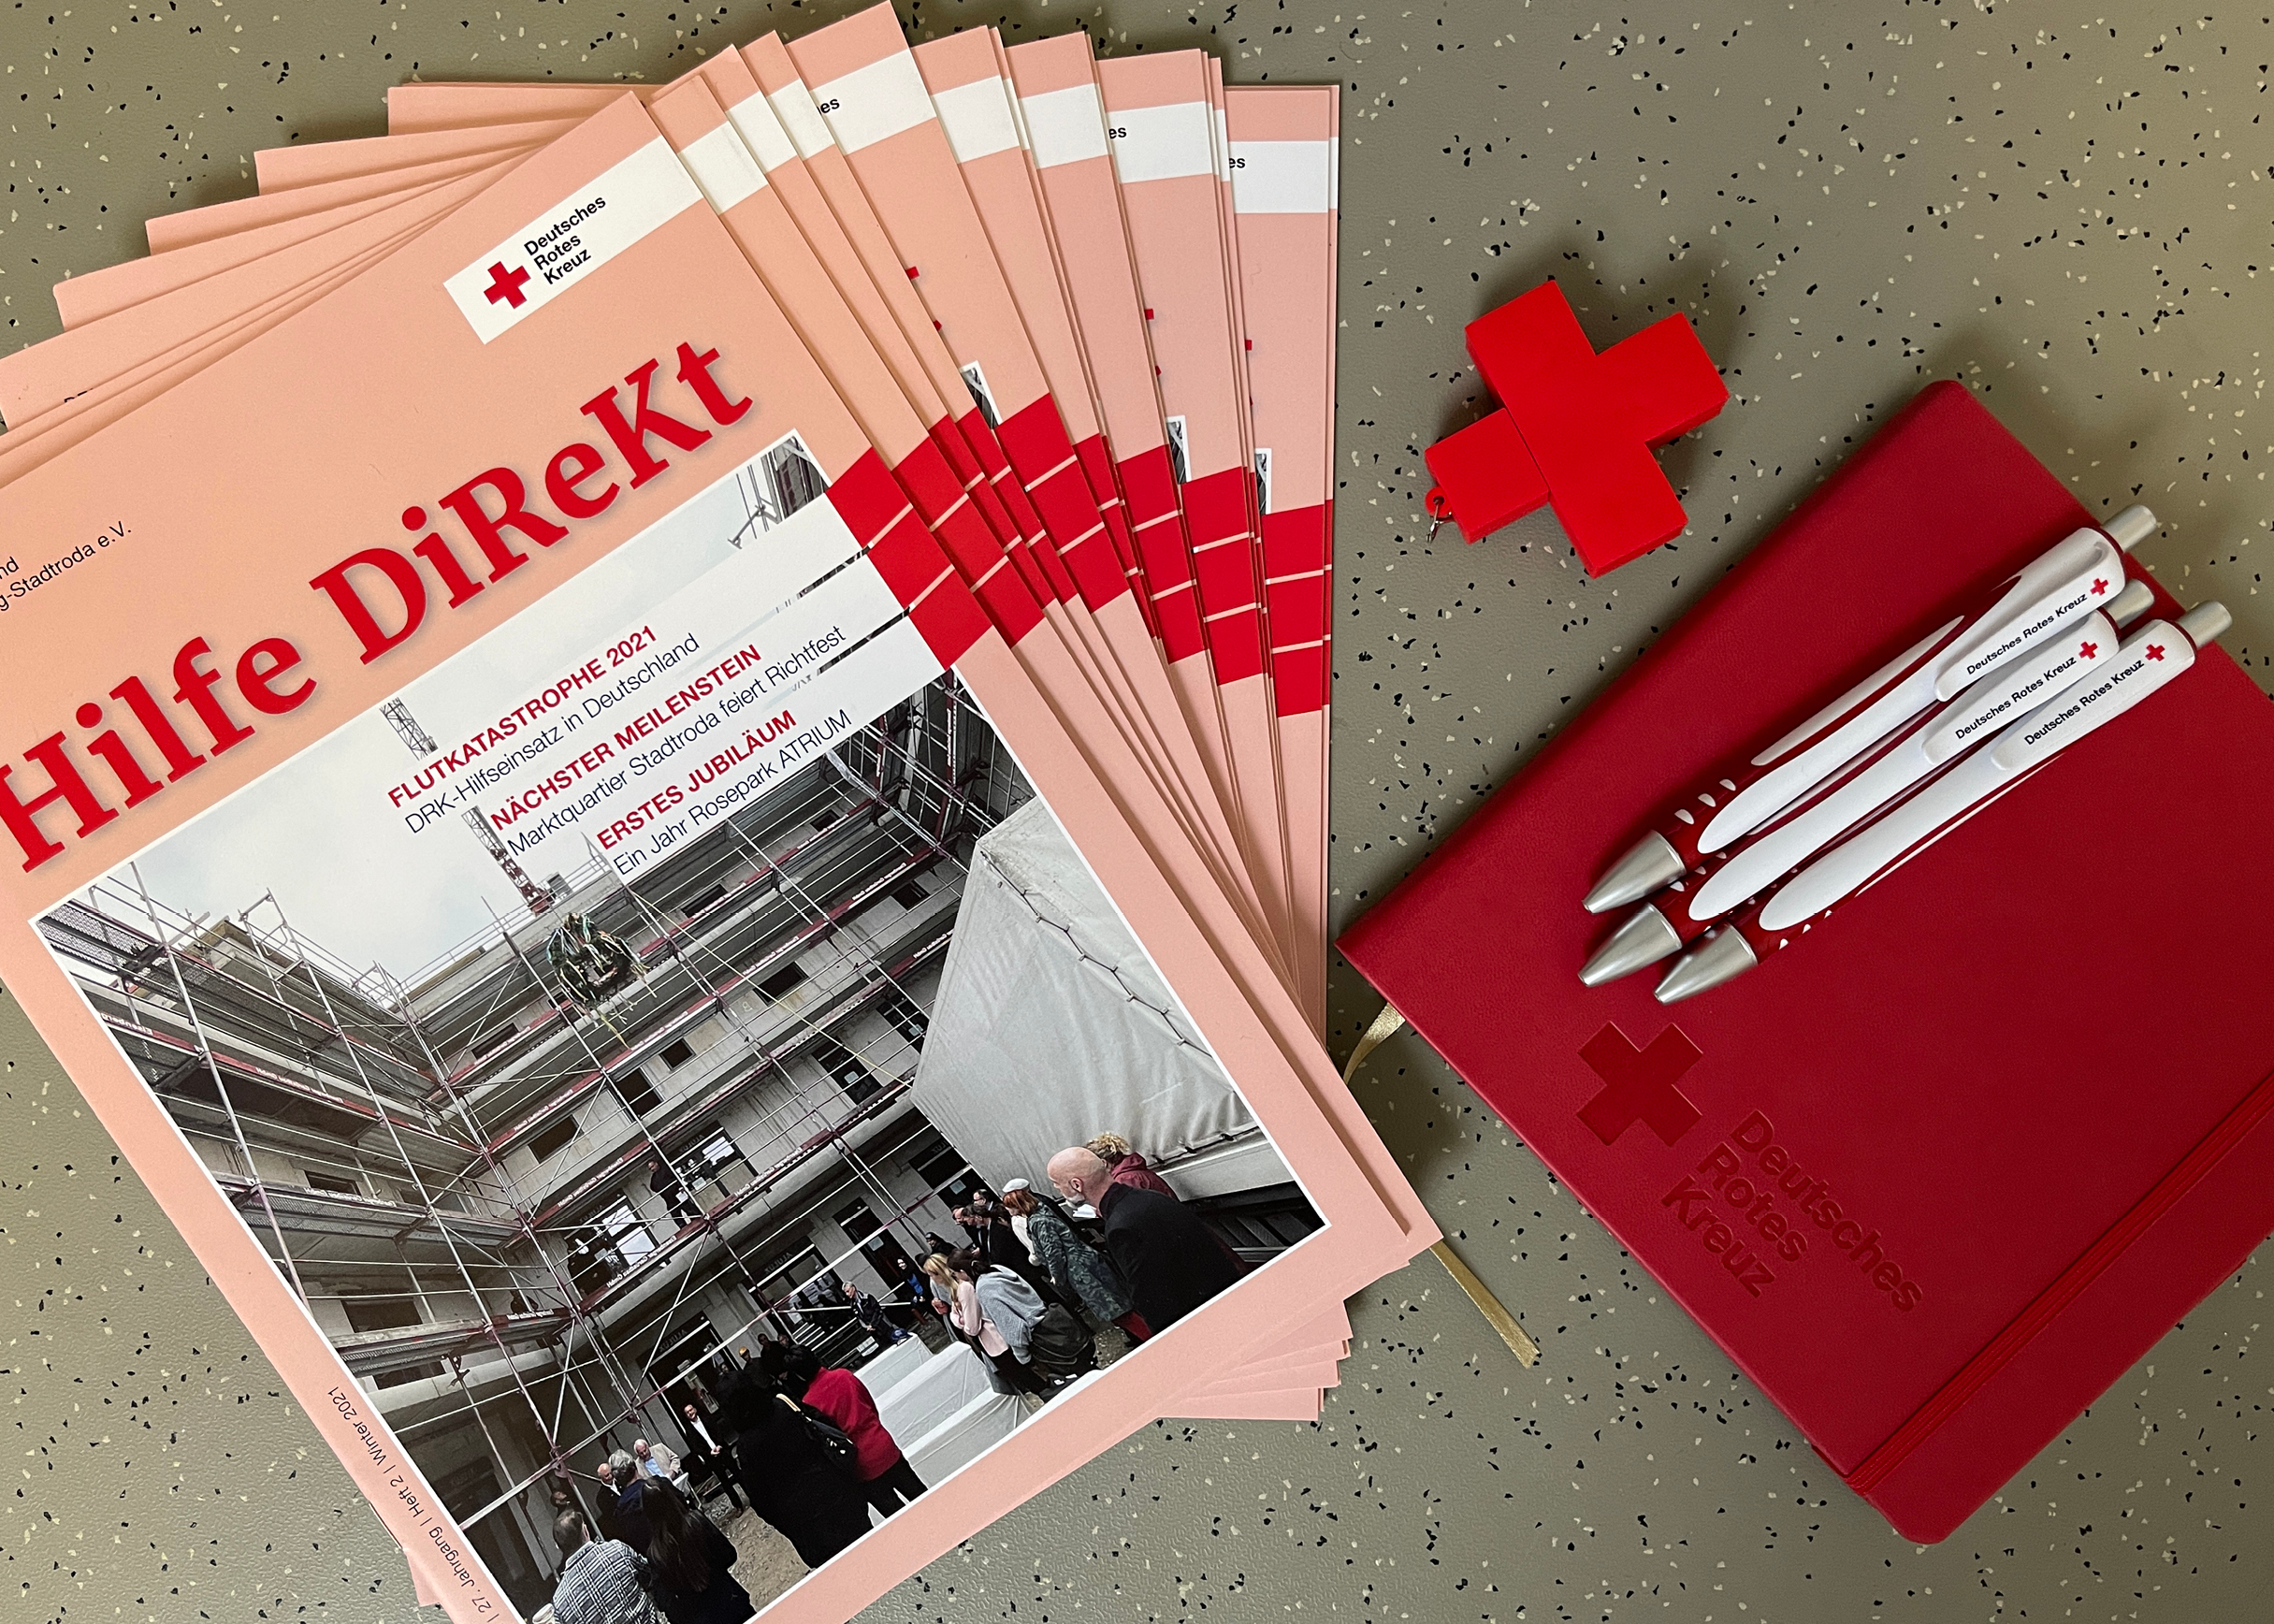 Hilfe Direkt | Mitgliederzeitschrift des DRK-Kreisverbandes Jena-Eisenberg-Stadtroda